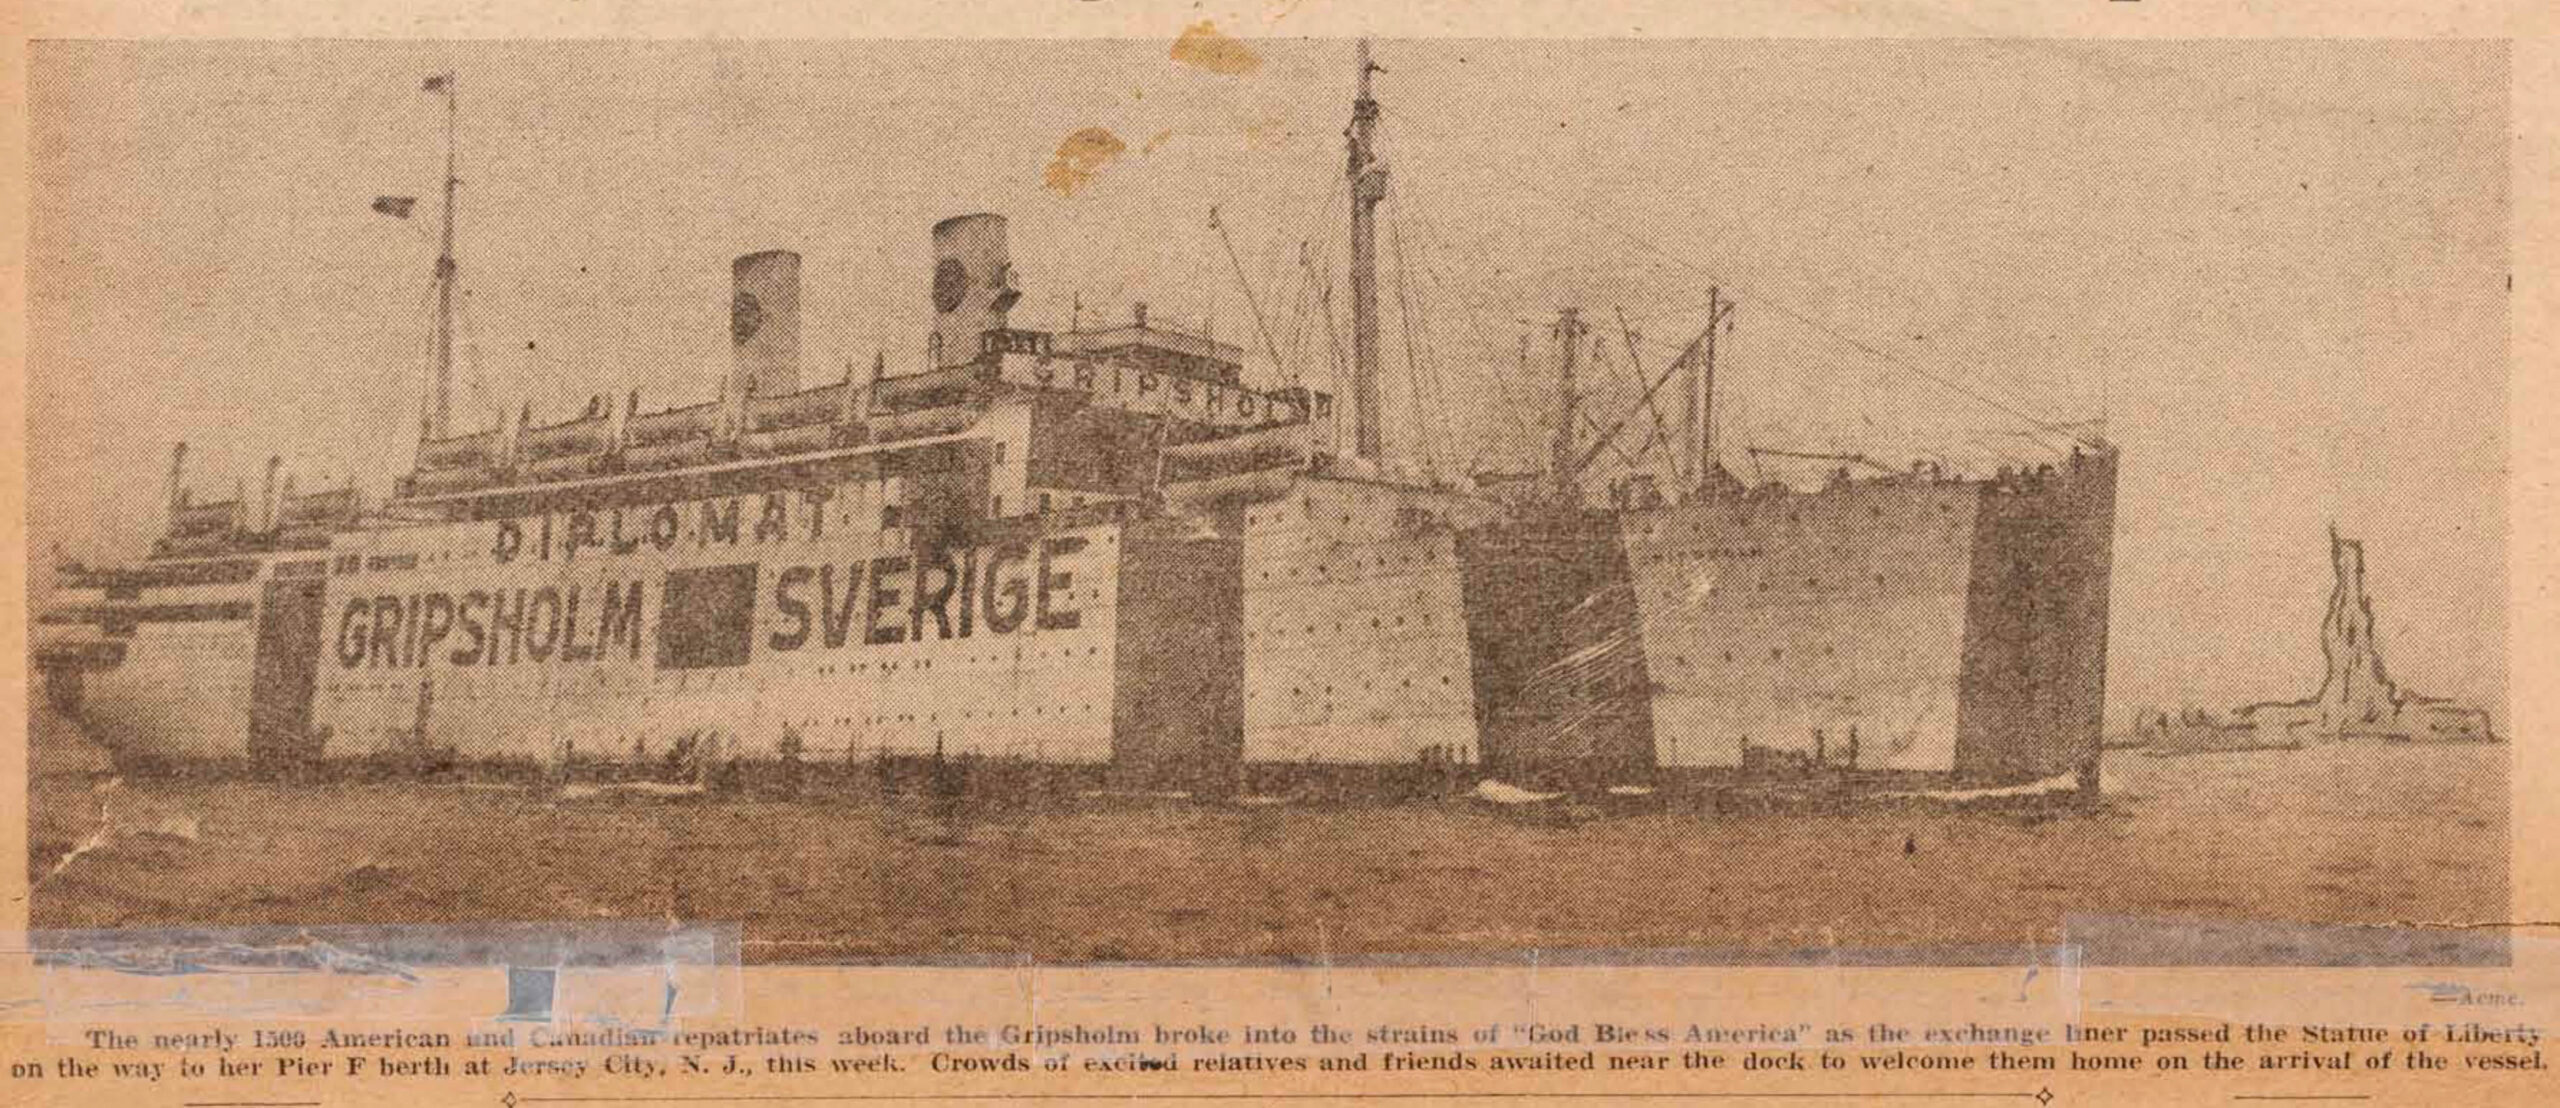 圖 標示DIPLOMAT的瑞典籍Gripsholm號客輪，在二戰期間共執行人員交換及遣返12次。圖為刊登於1942年12月3日The Shanghai Evening Post上的Gripsholm號客輪圖片。